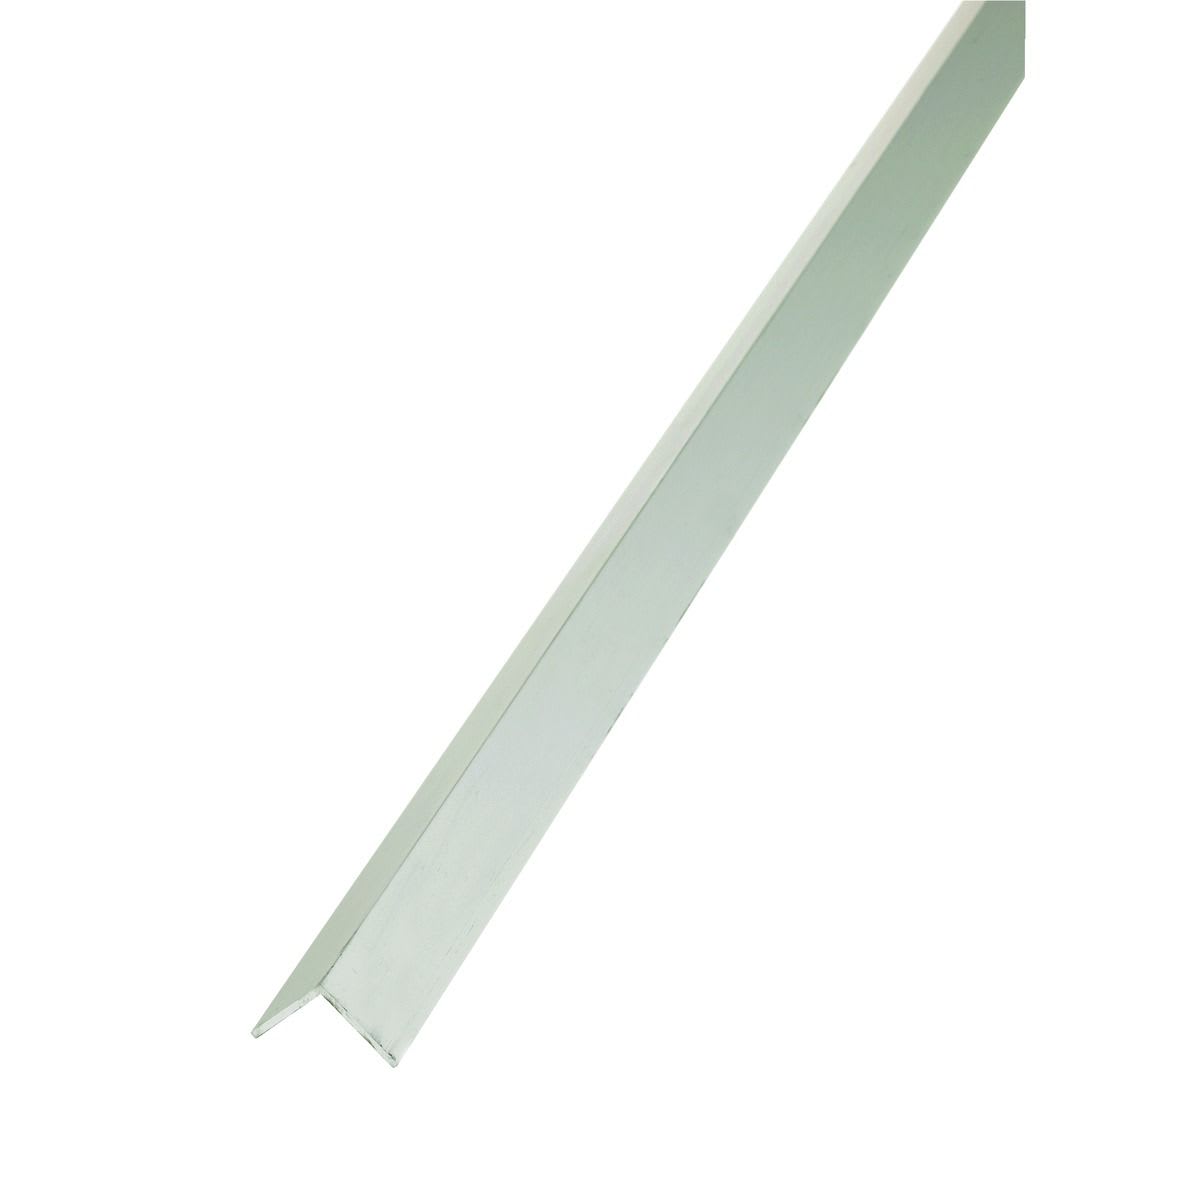 Wickes Angle - Anodised Aluminium 10 x 20mm